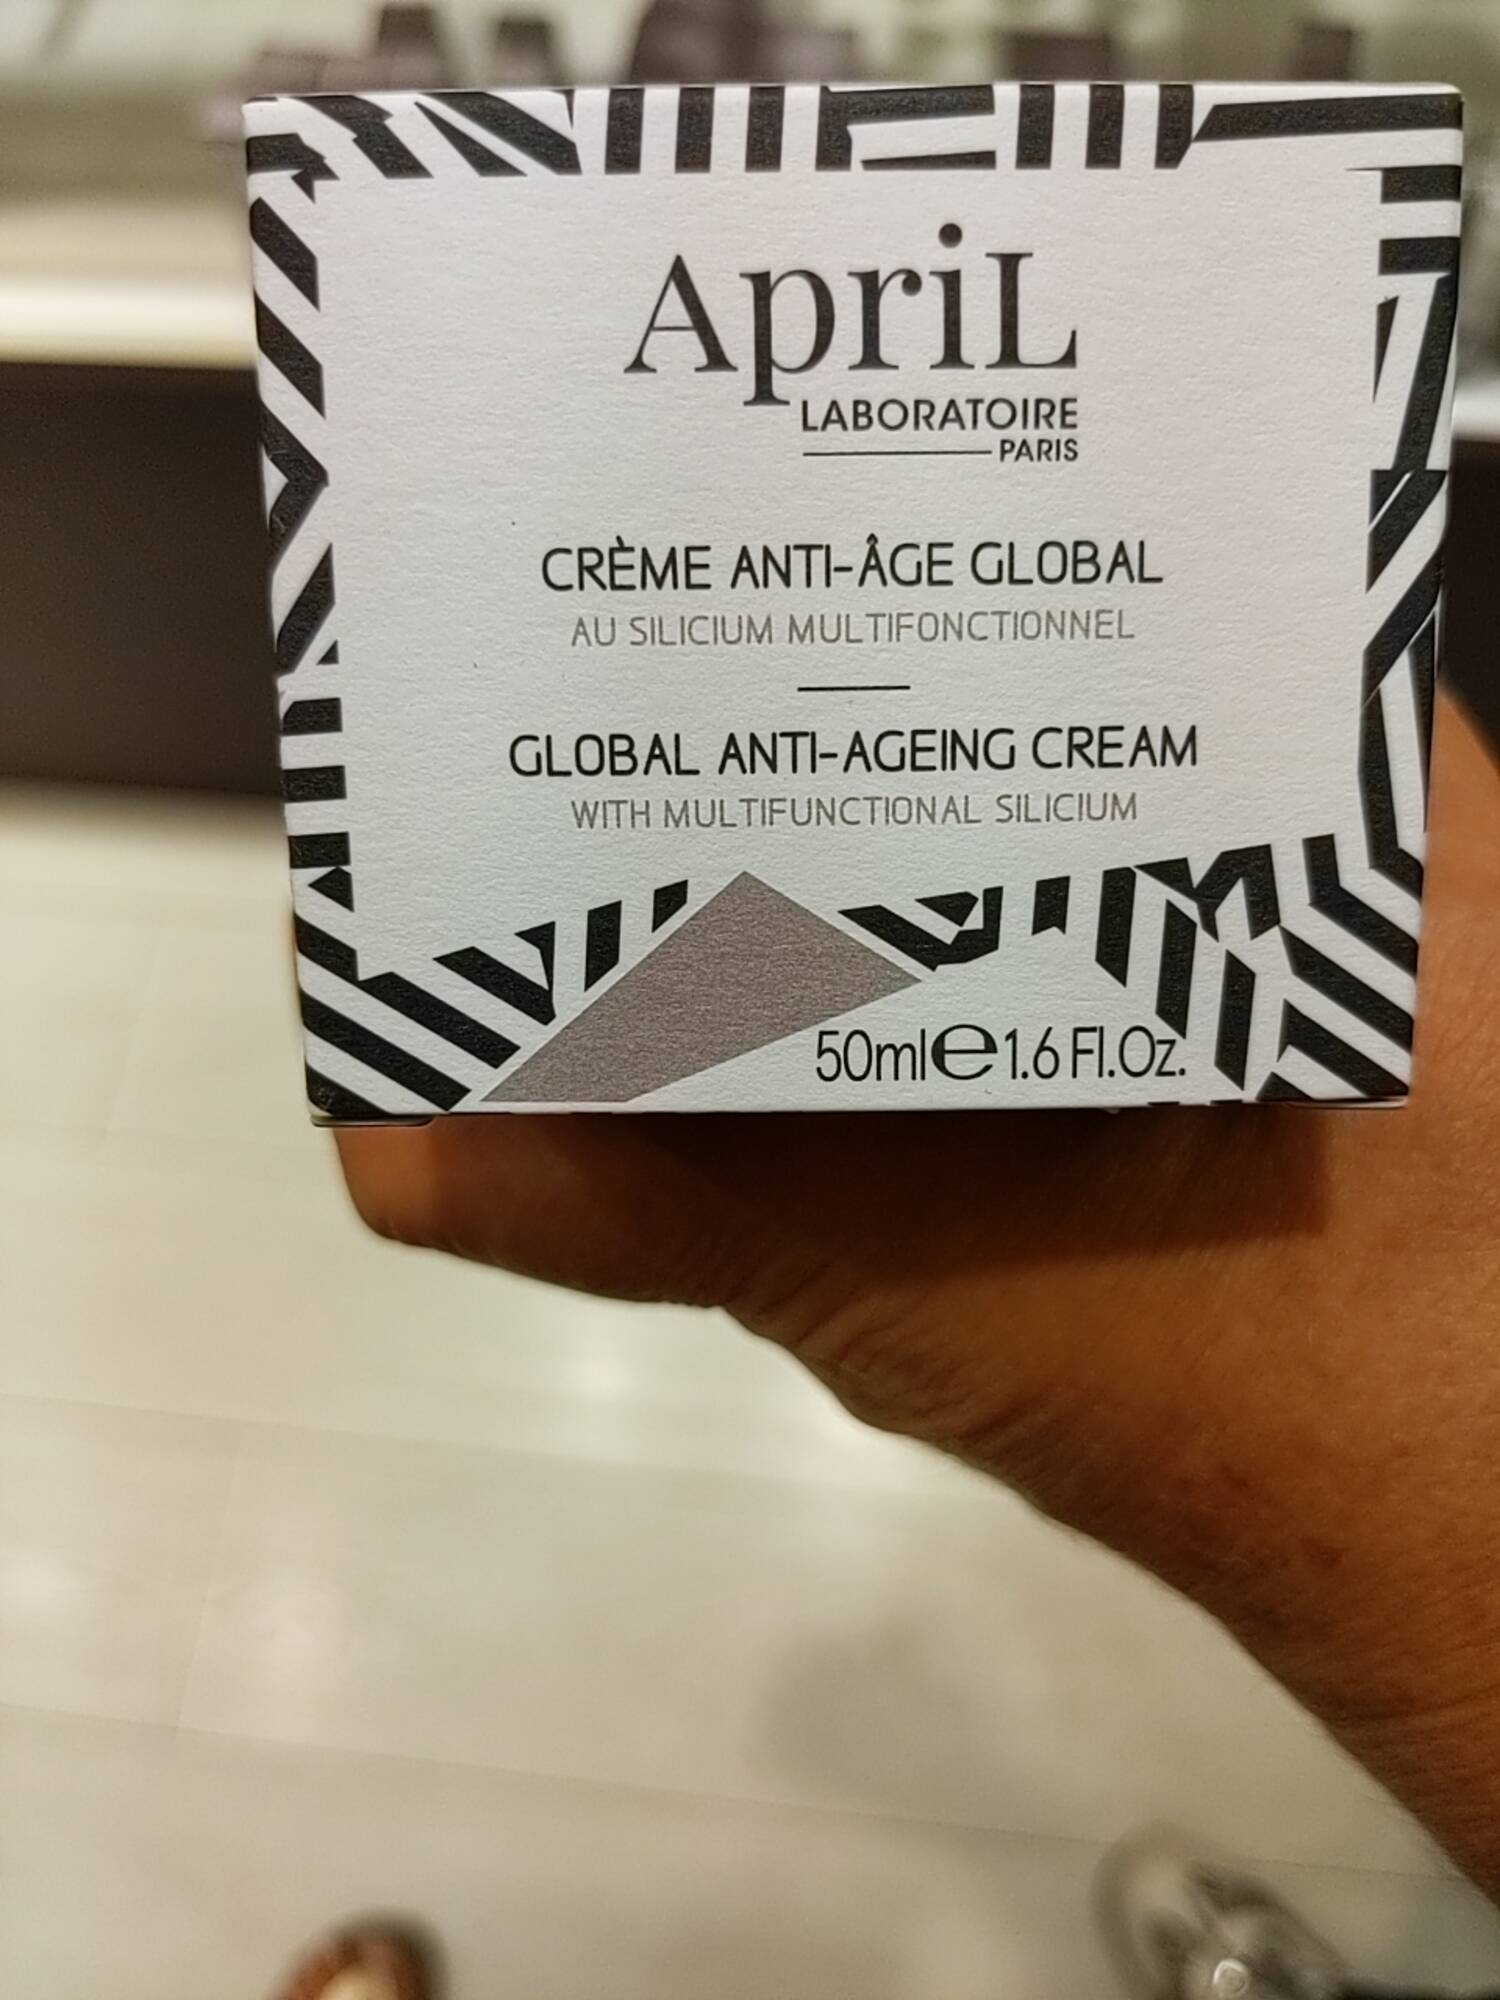 APRIL LABORATOIRE PARIS - Crème anti âge global 